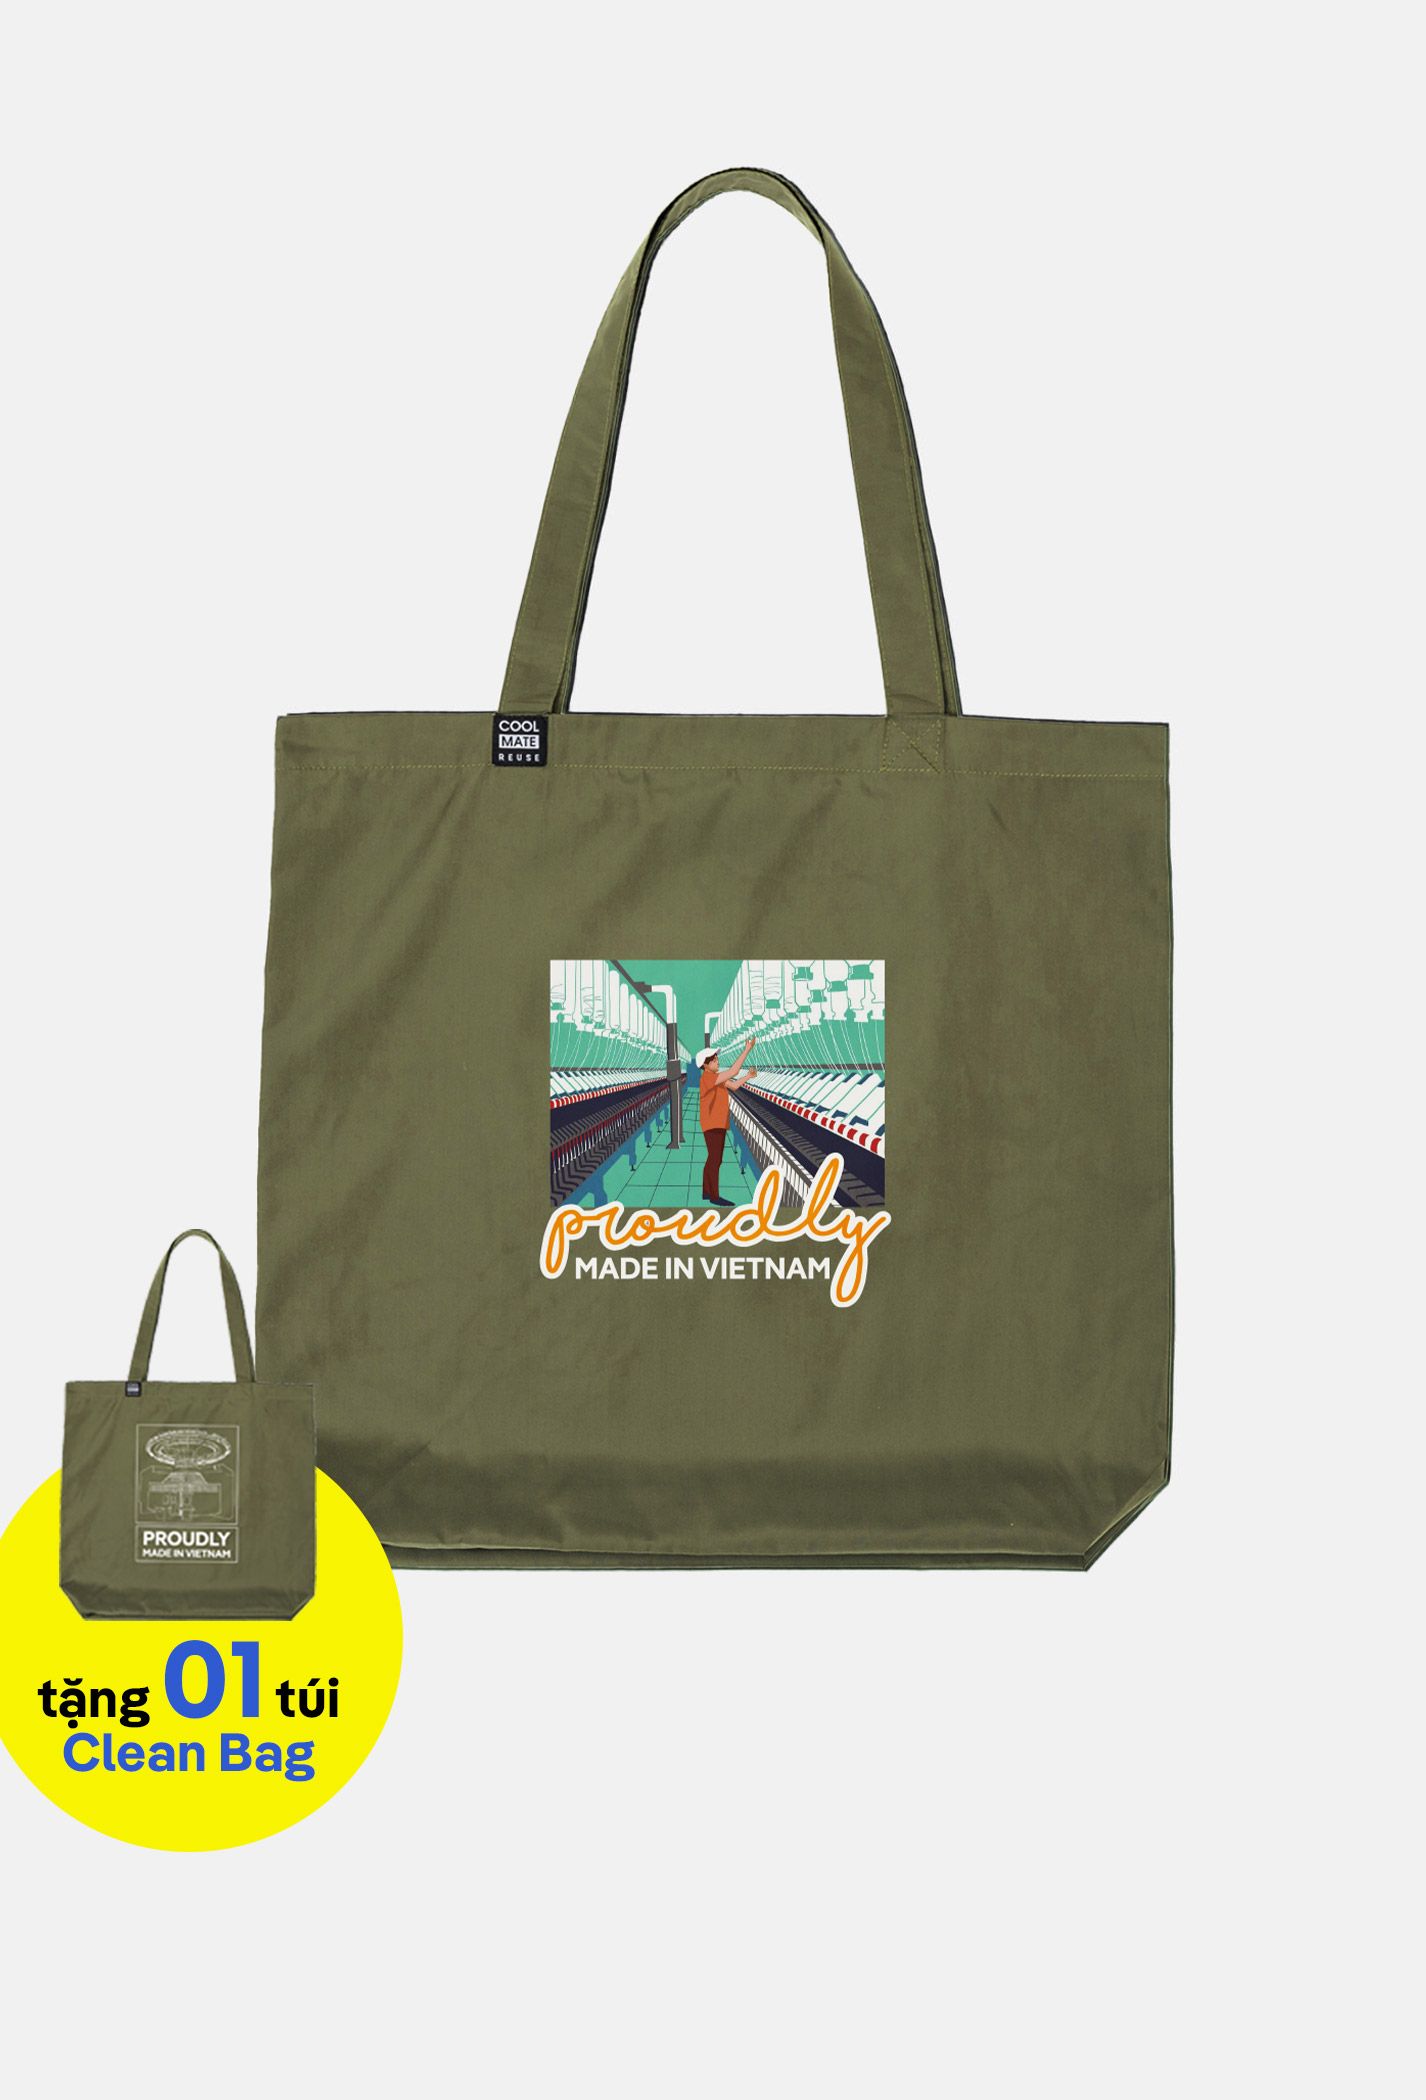 Proudly | Túi Clean Bag - màu Xanh Rêu in-noi-soi